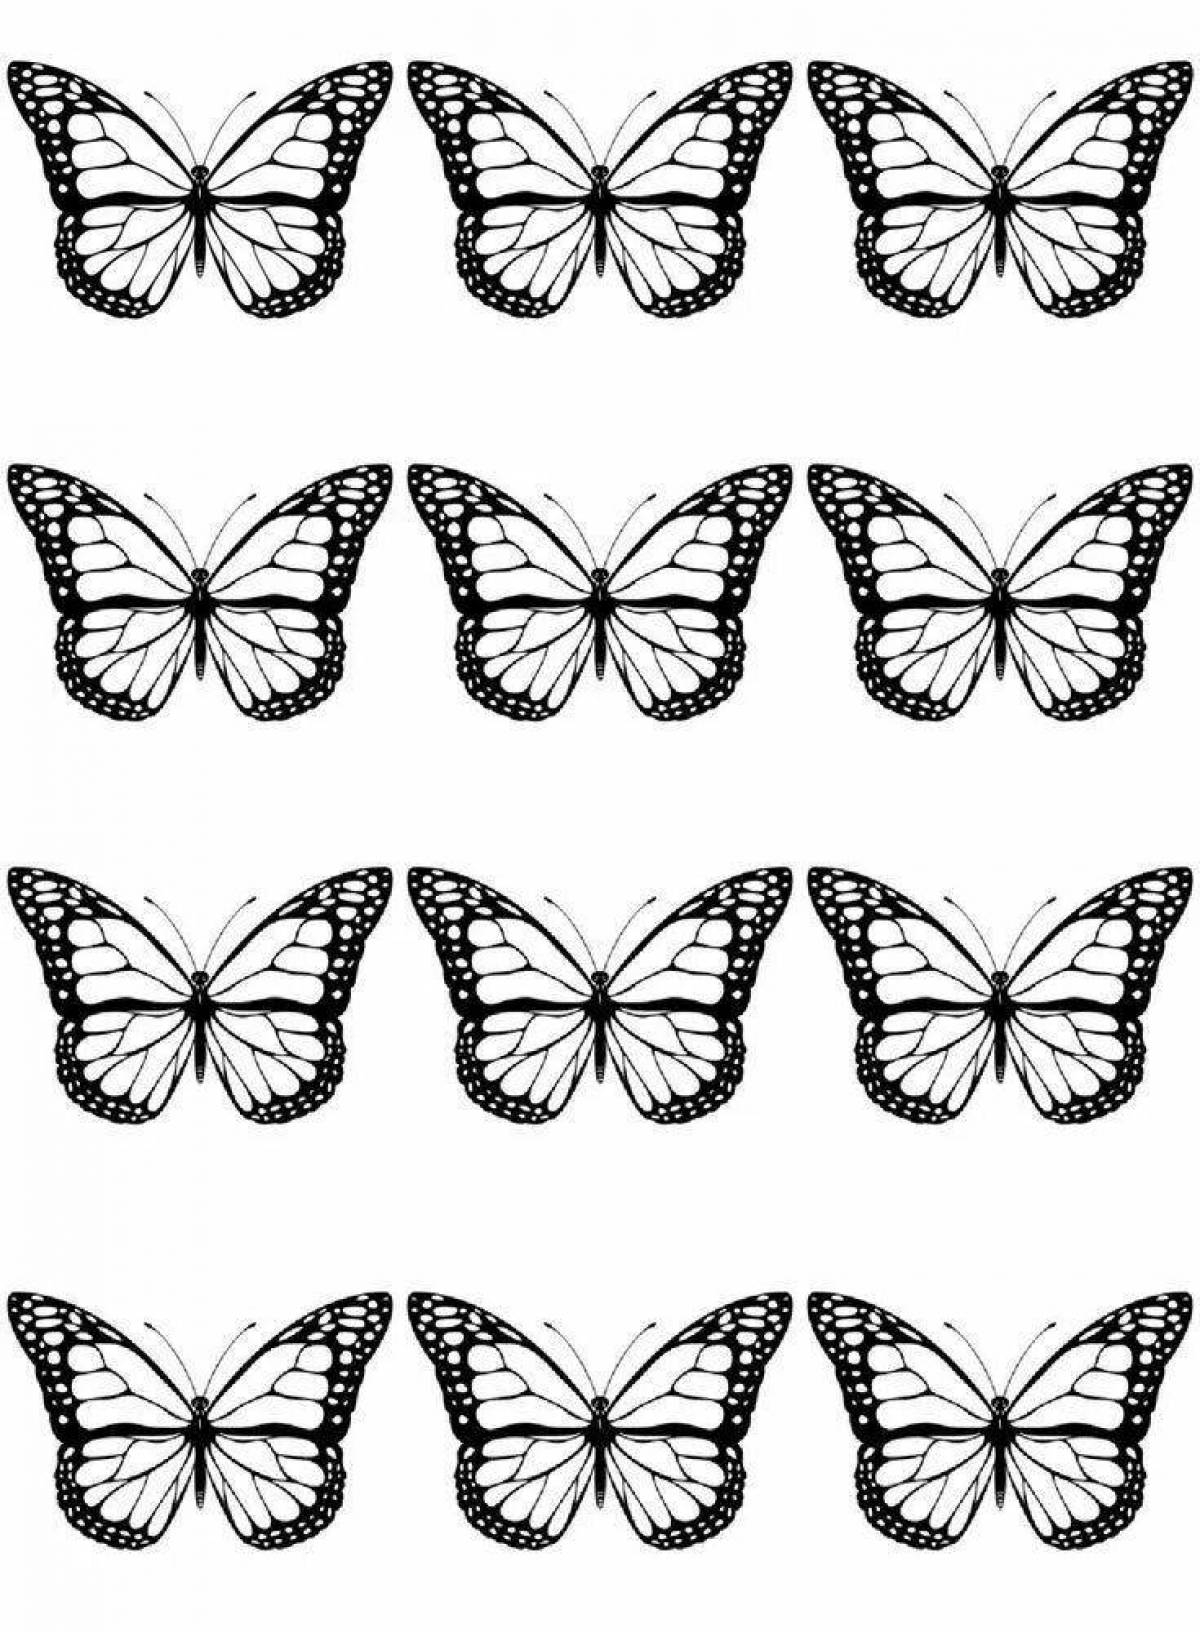 Раскраски бабочки скачать и распечатать бесплатно